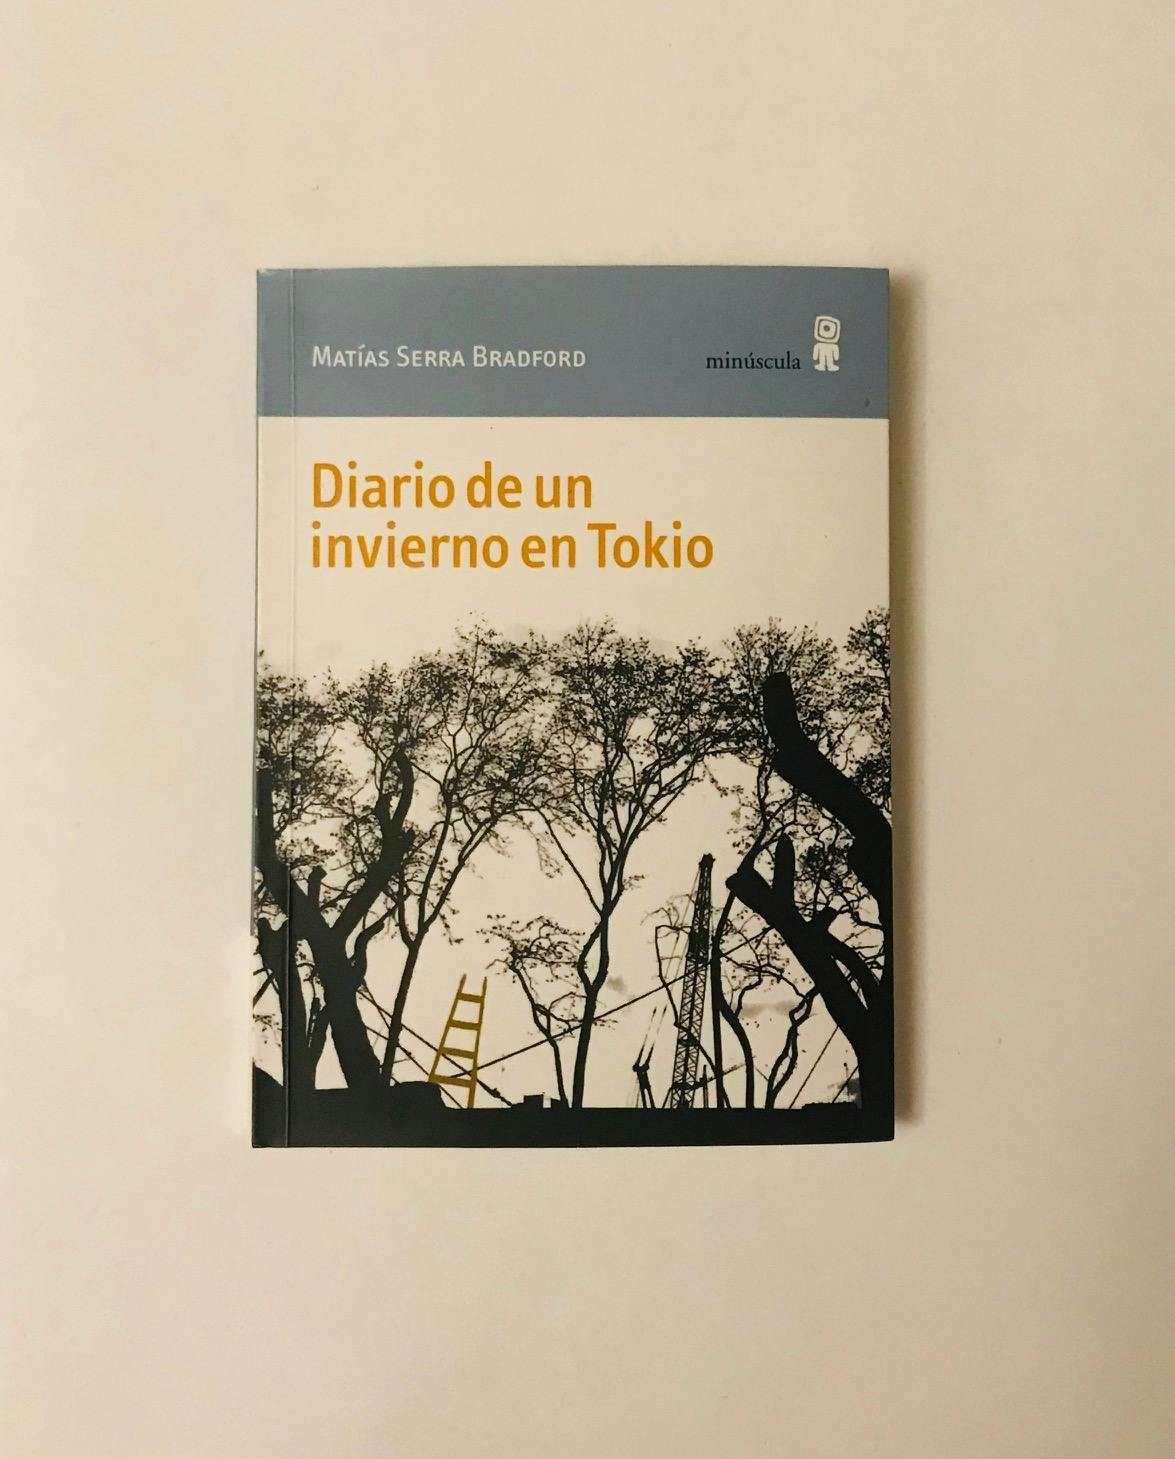 "DIARIO DE UN INVIERNO EN TOKIO",M. Serra Bradford